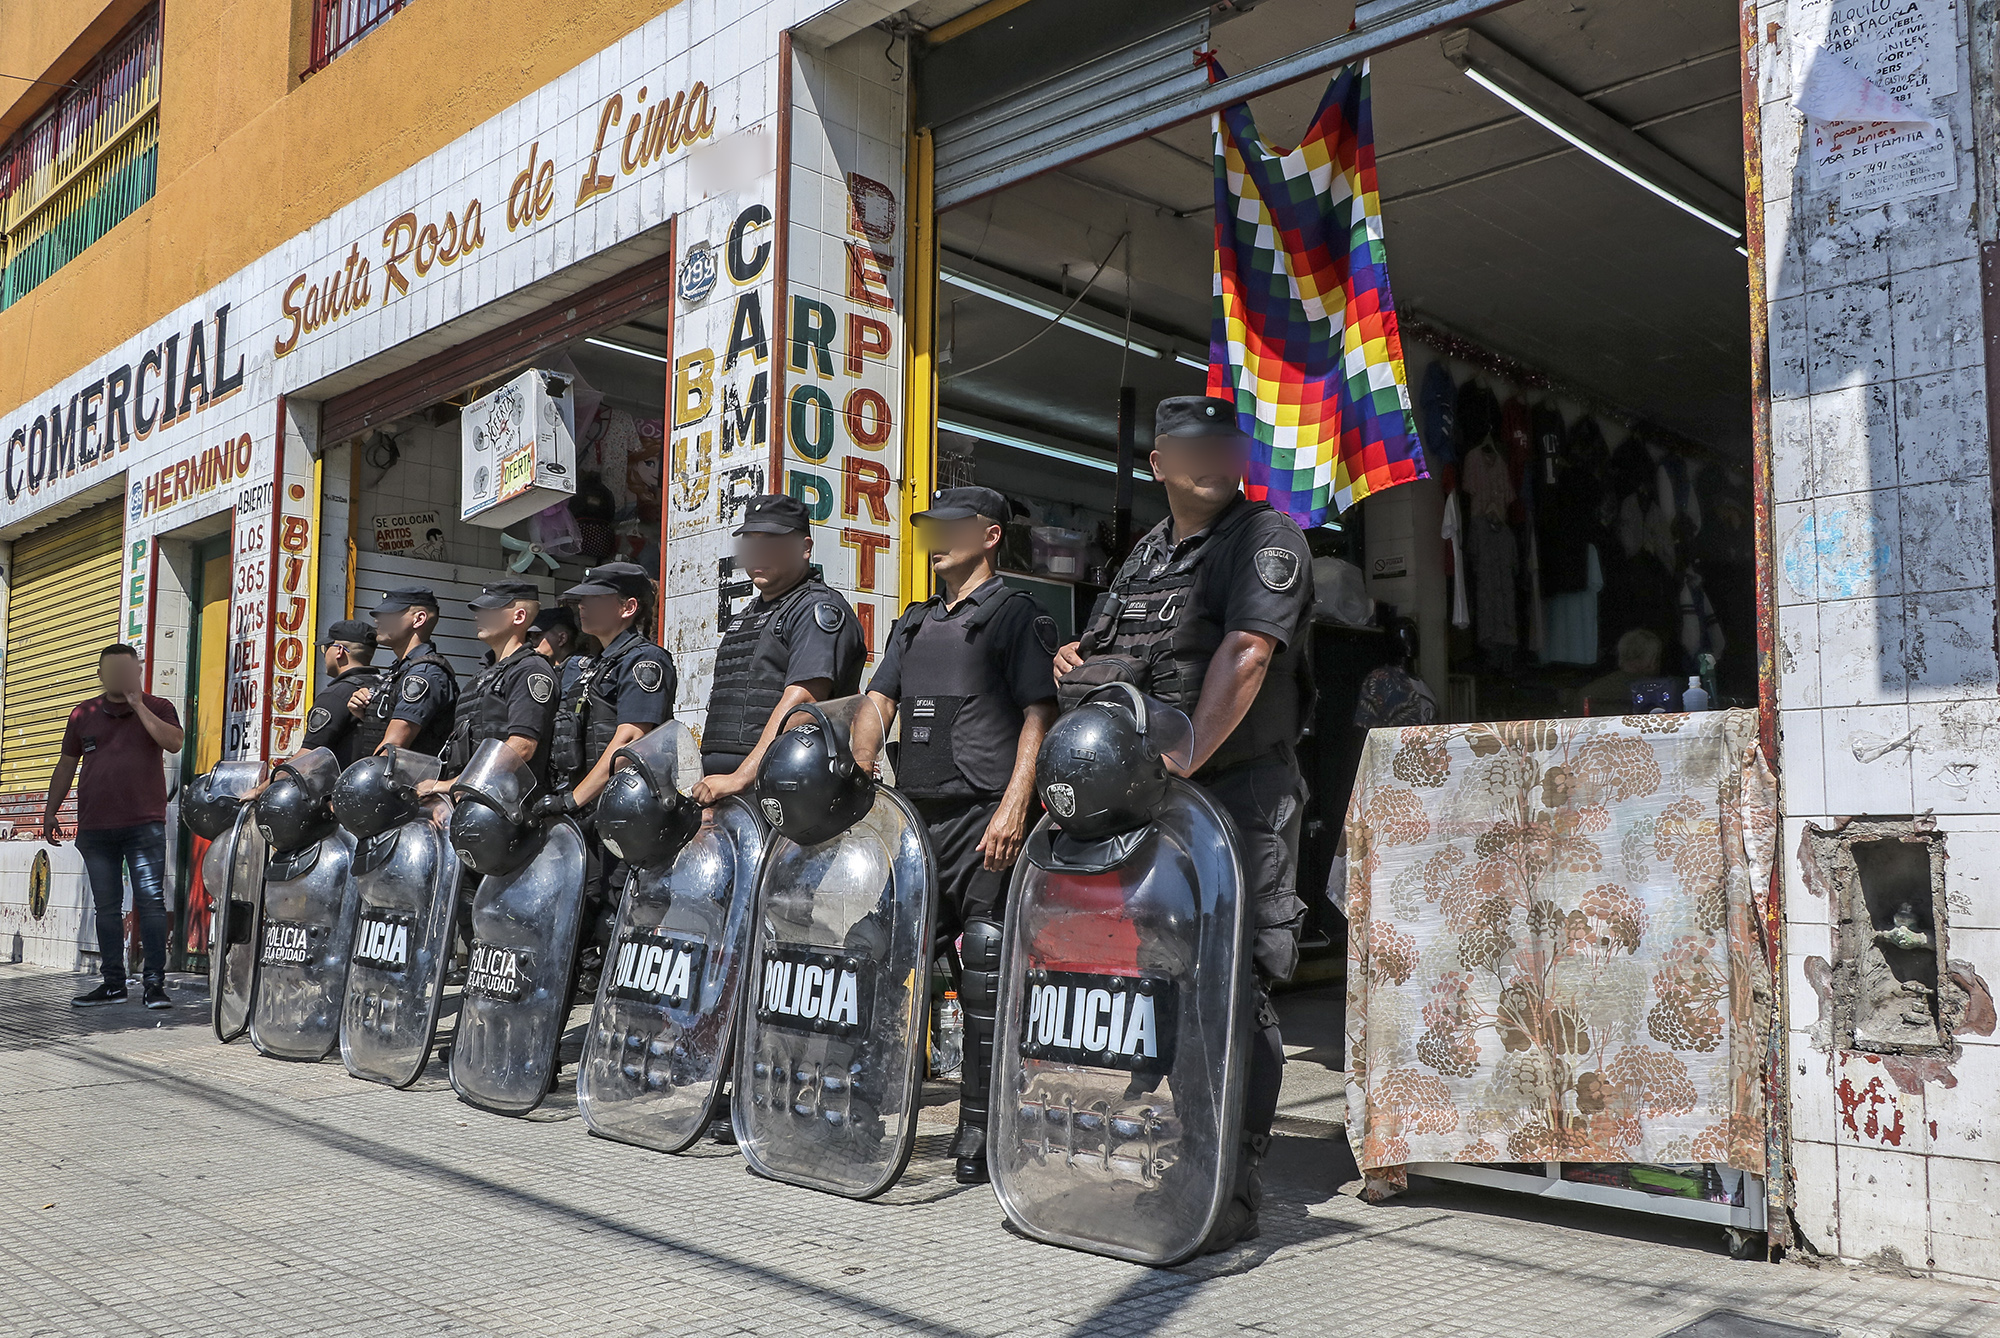 Allanamiento de mercadería apócrifa en Liniers valuada en 10 millones de pesos  